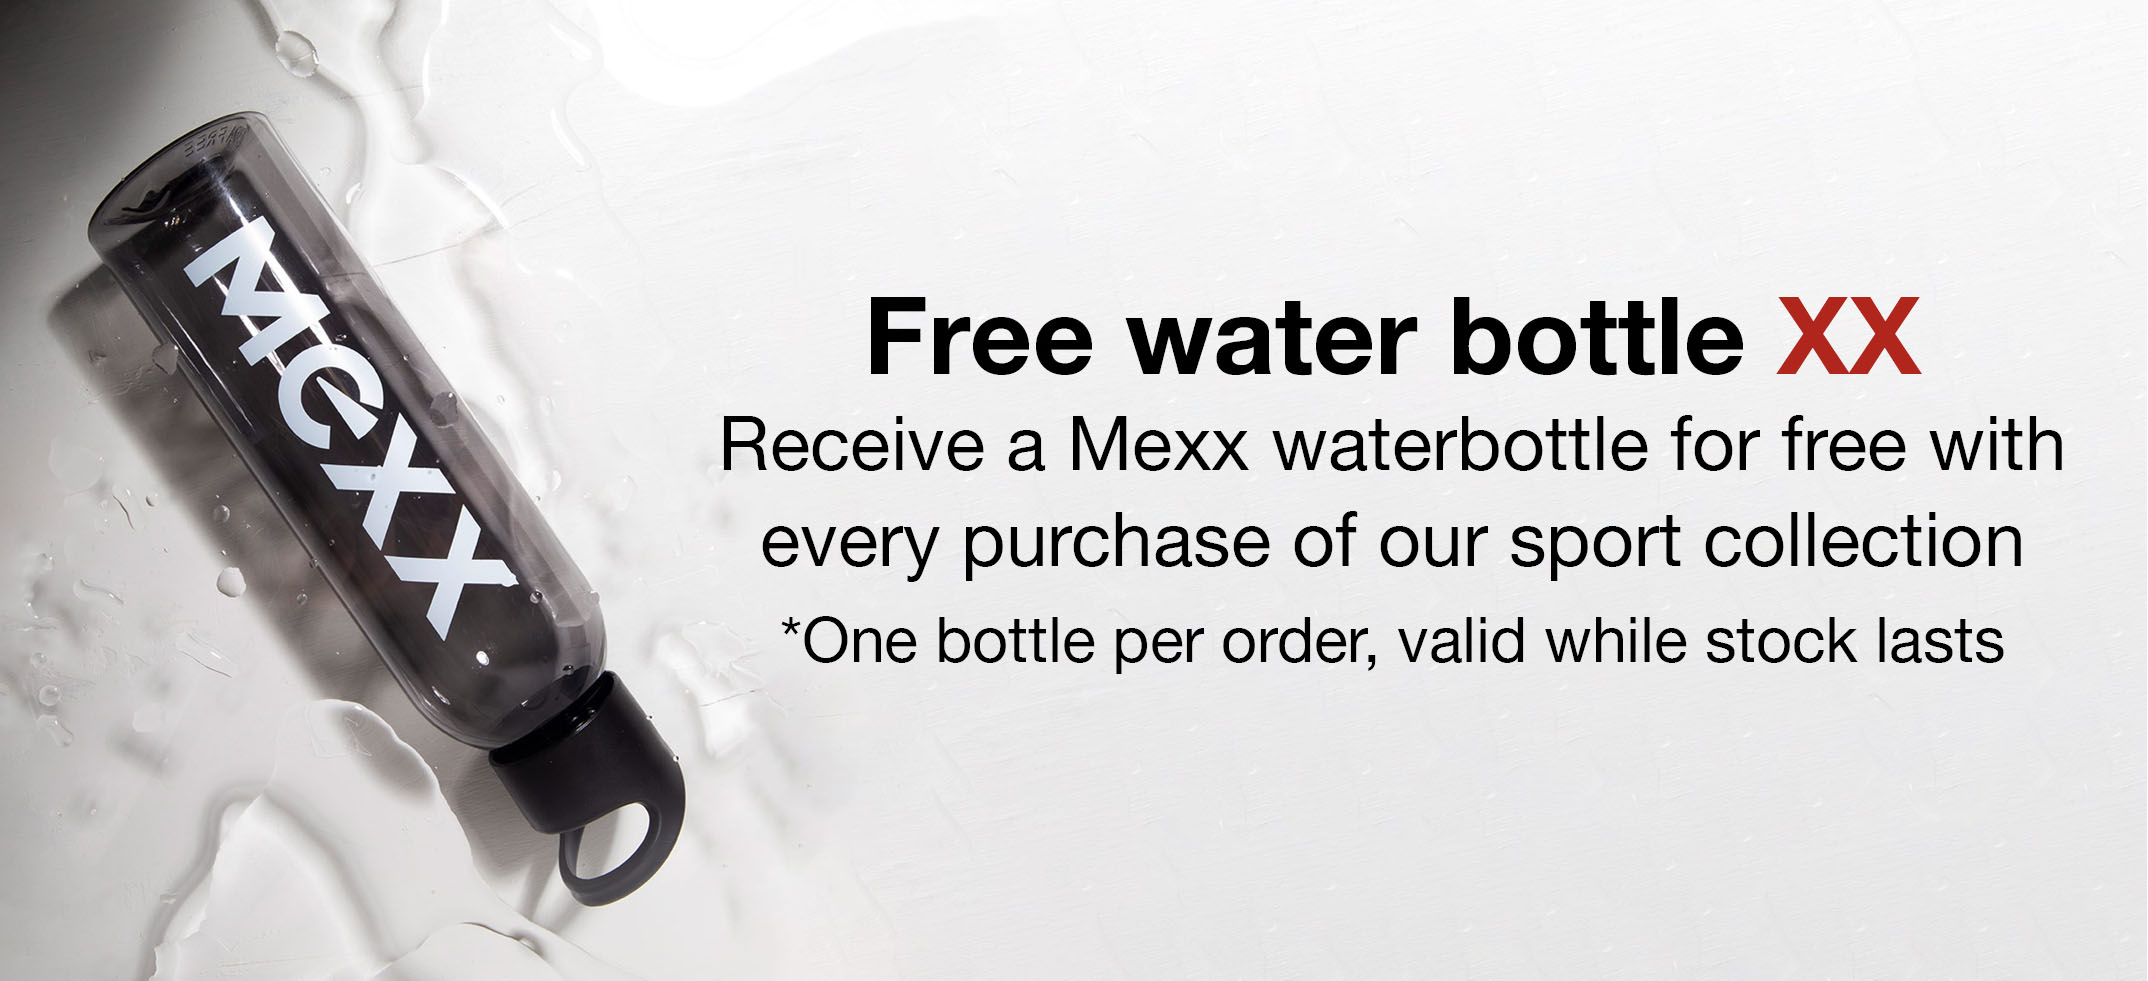 free water bottle